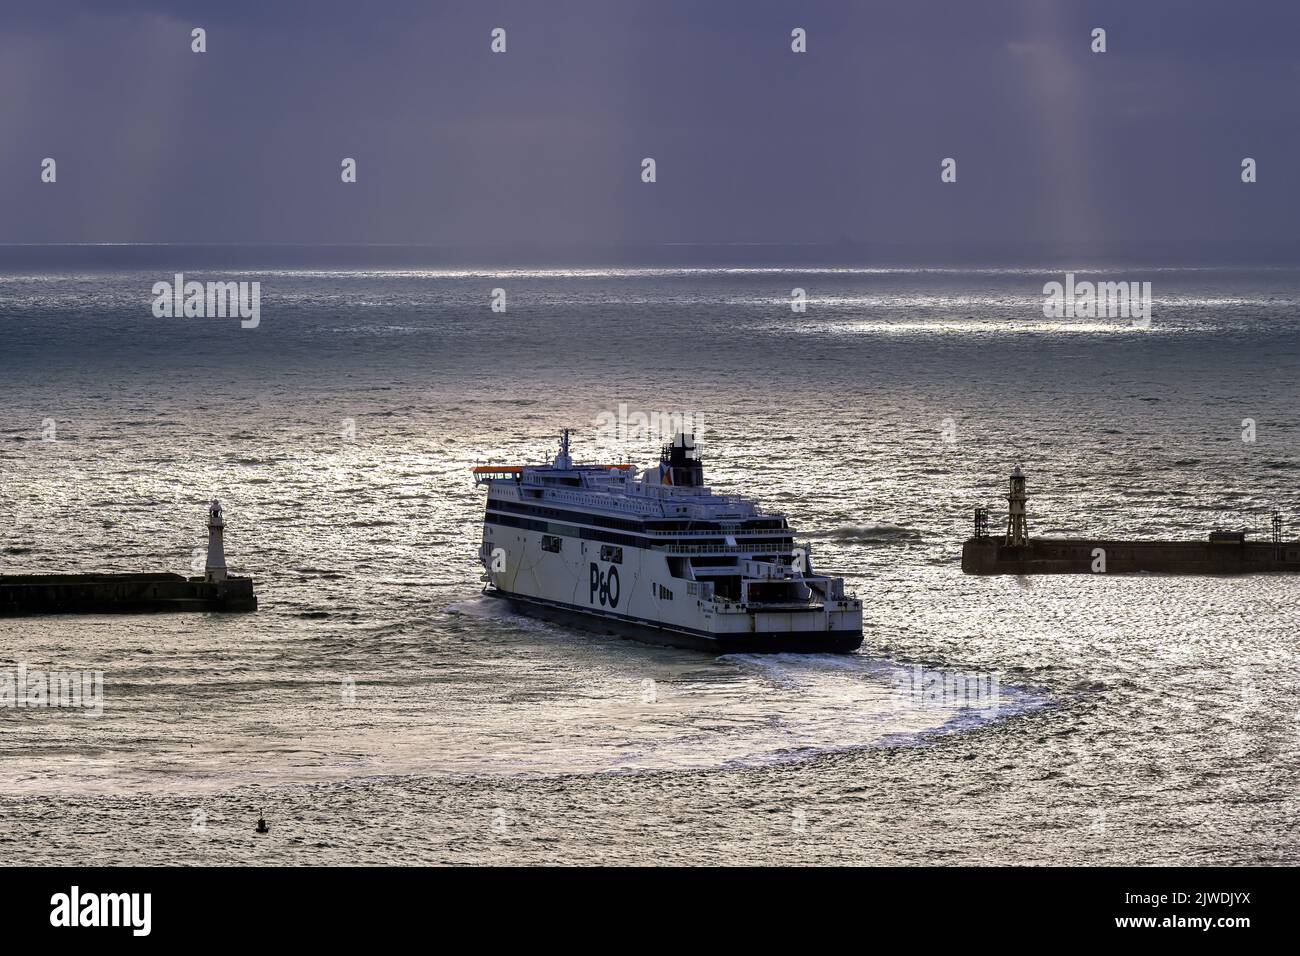 Il traghetto Spirit of Britain (P&o Ferries) esce dal porto di dover dall'entrata occidentale. Foto Stock